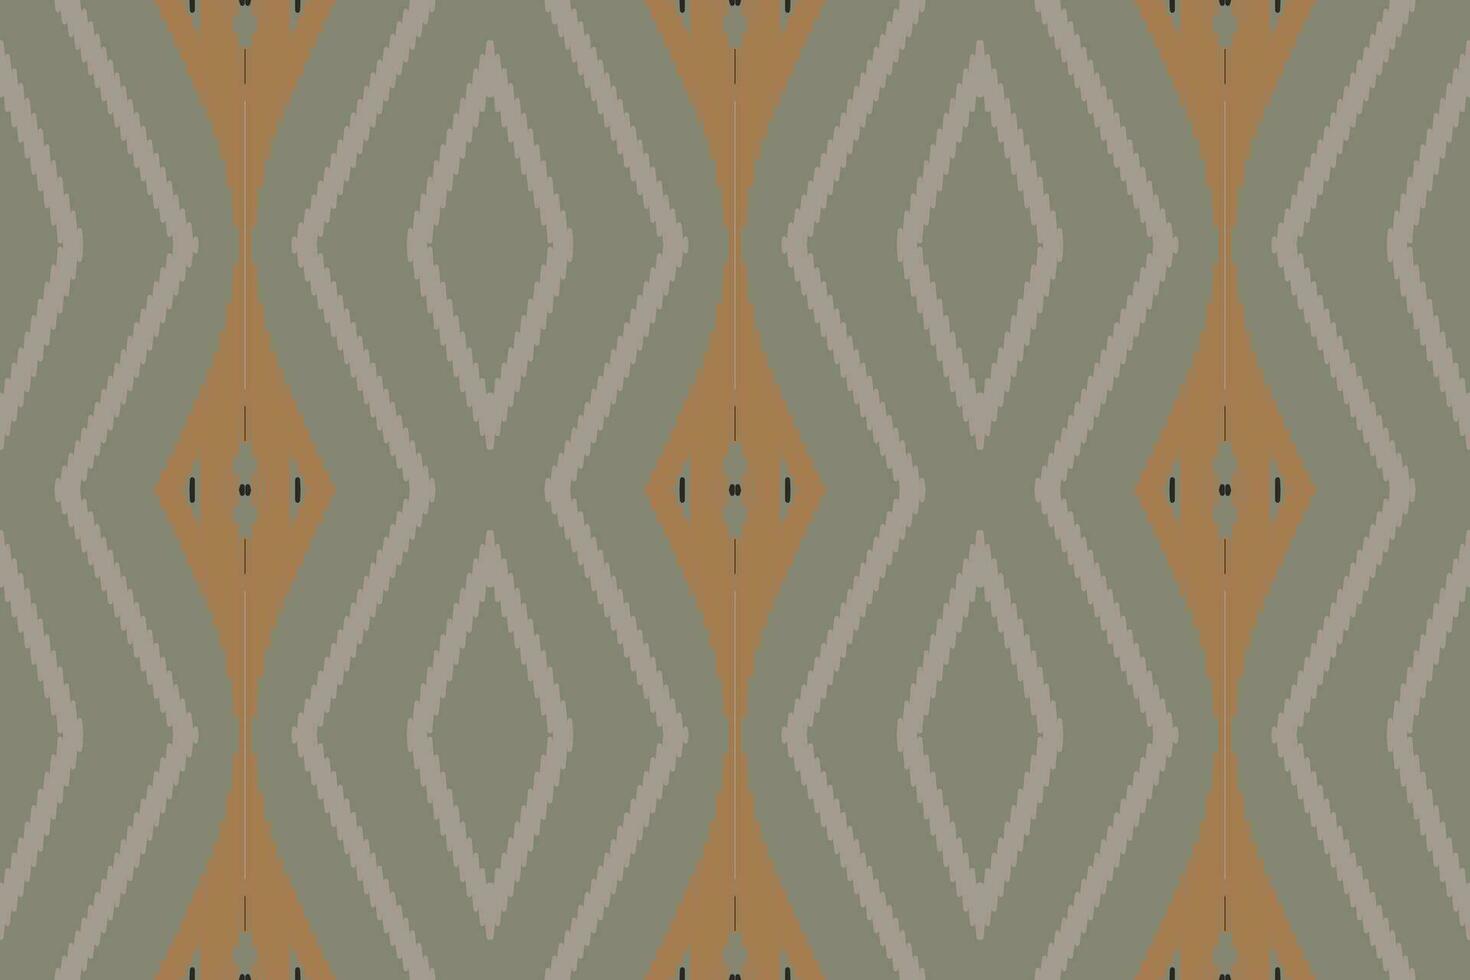 ikat sömlös mönster broderi bakgrund. ikat tyg geometrisk etnisk orientalisk mönster traditionell.aztec stil abstrakt vektor illustration.design för textur, tyg, kläder, inslagning, sarong.